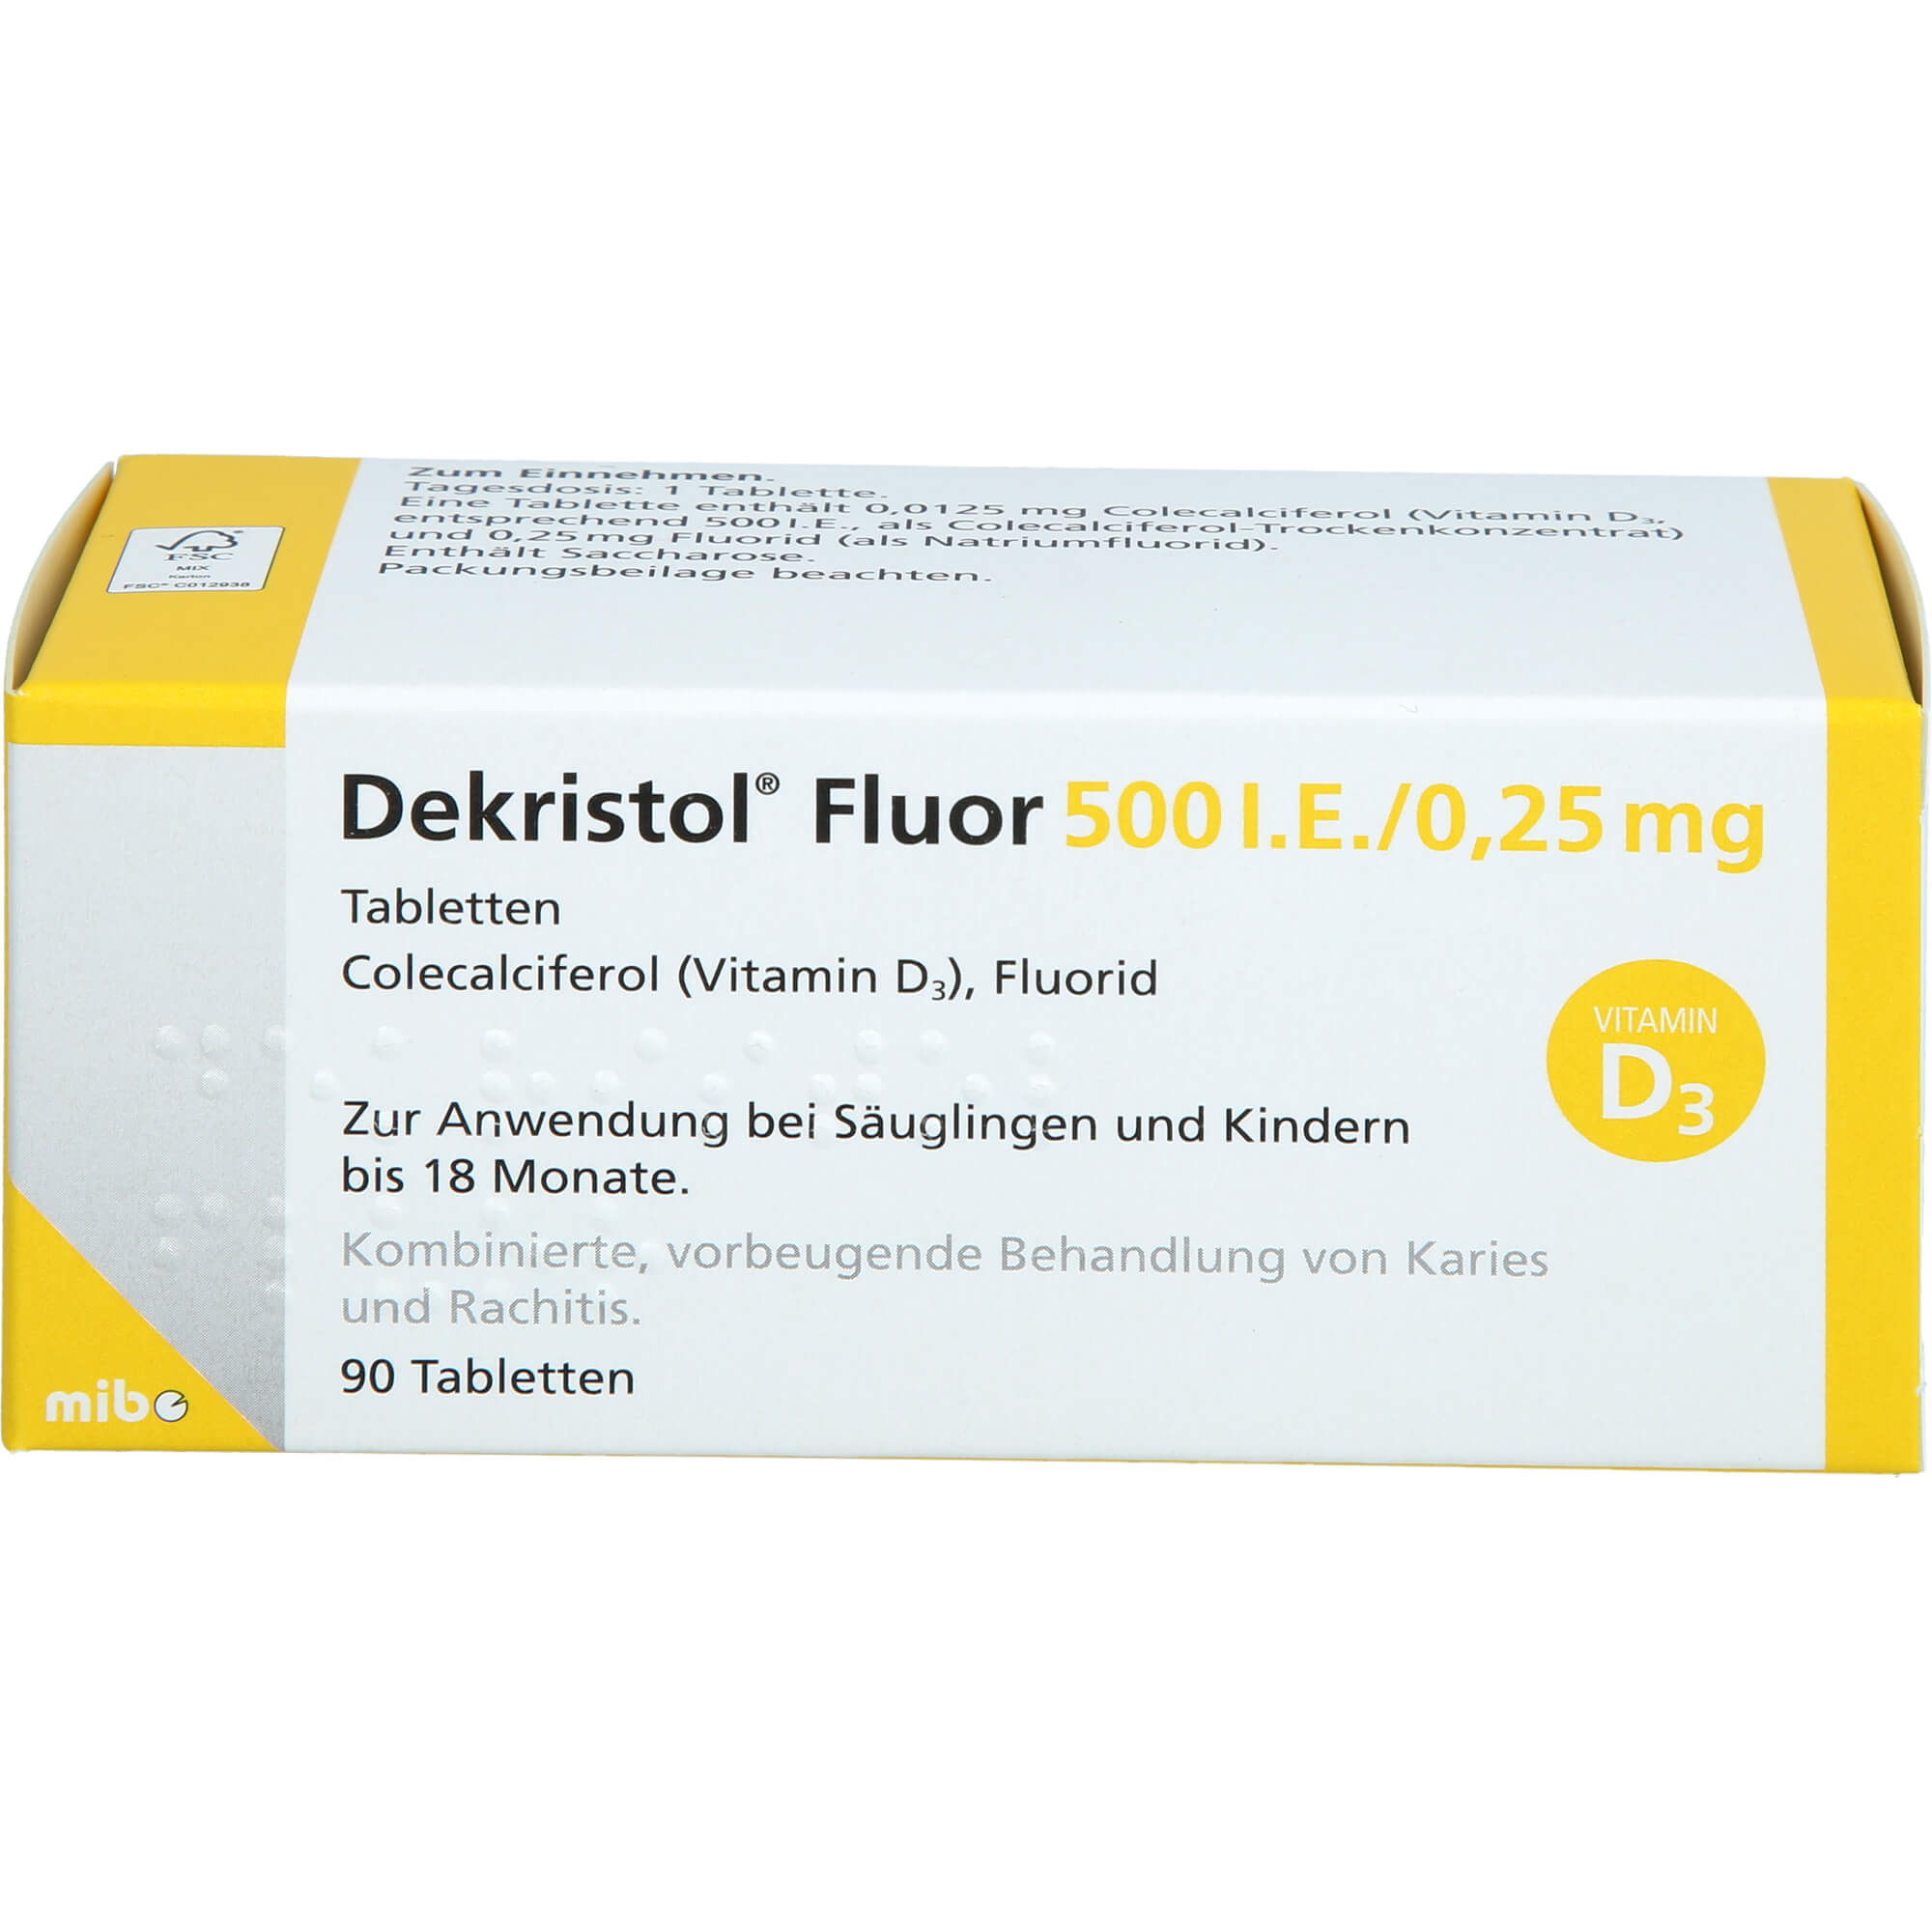 DEKRISTOL Fluor 500 I.E./0,25 mg Tabletten